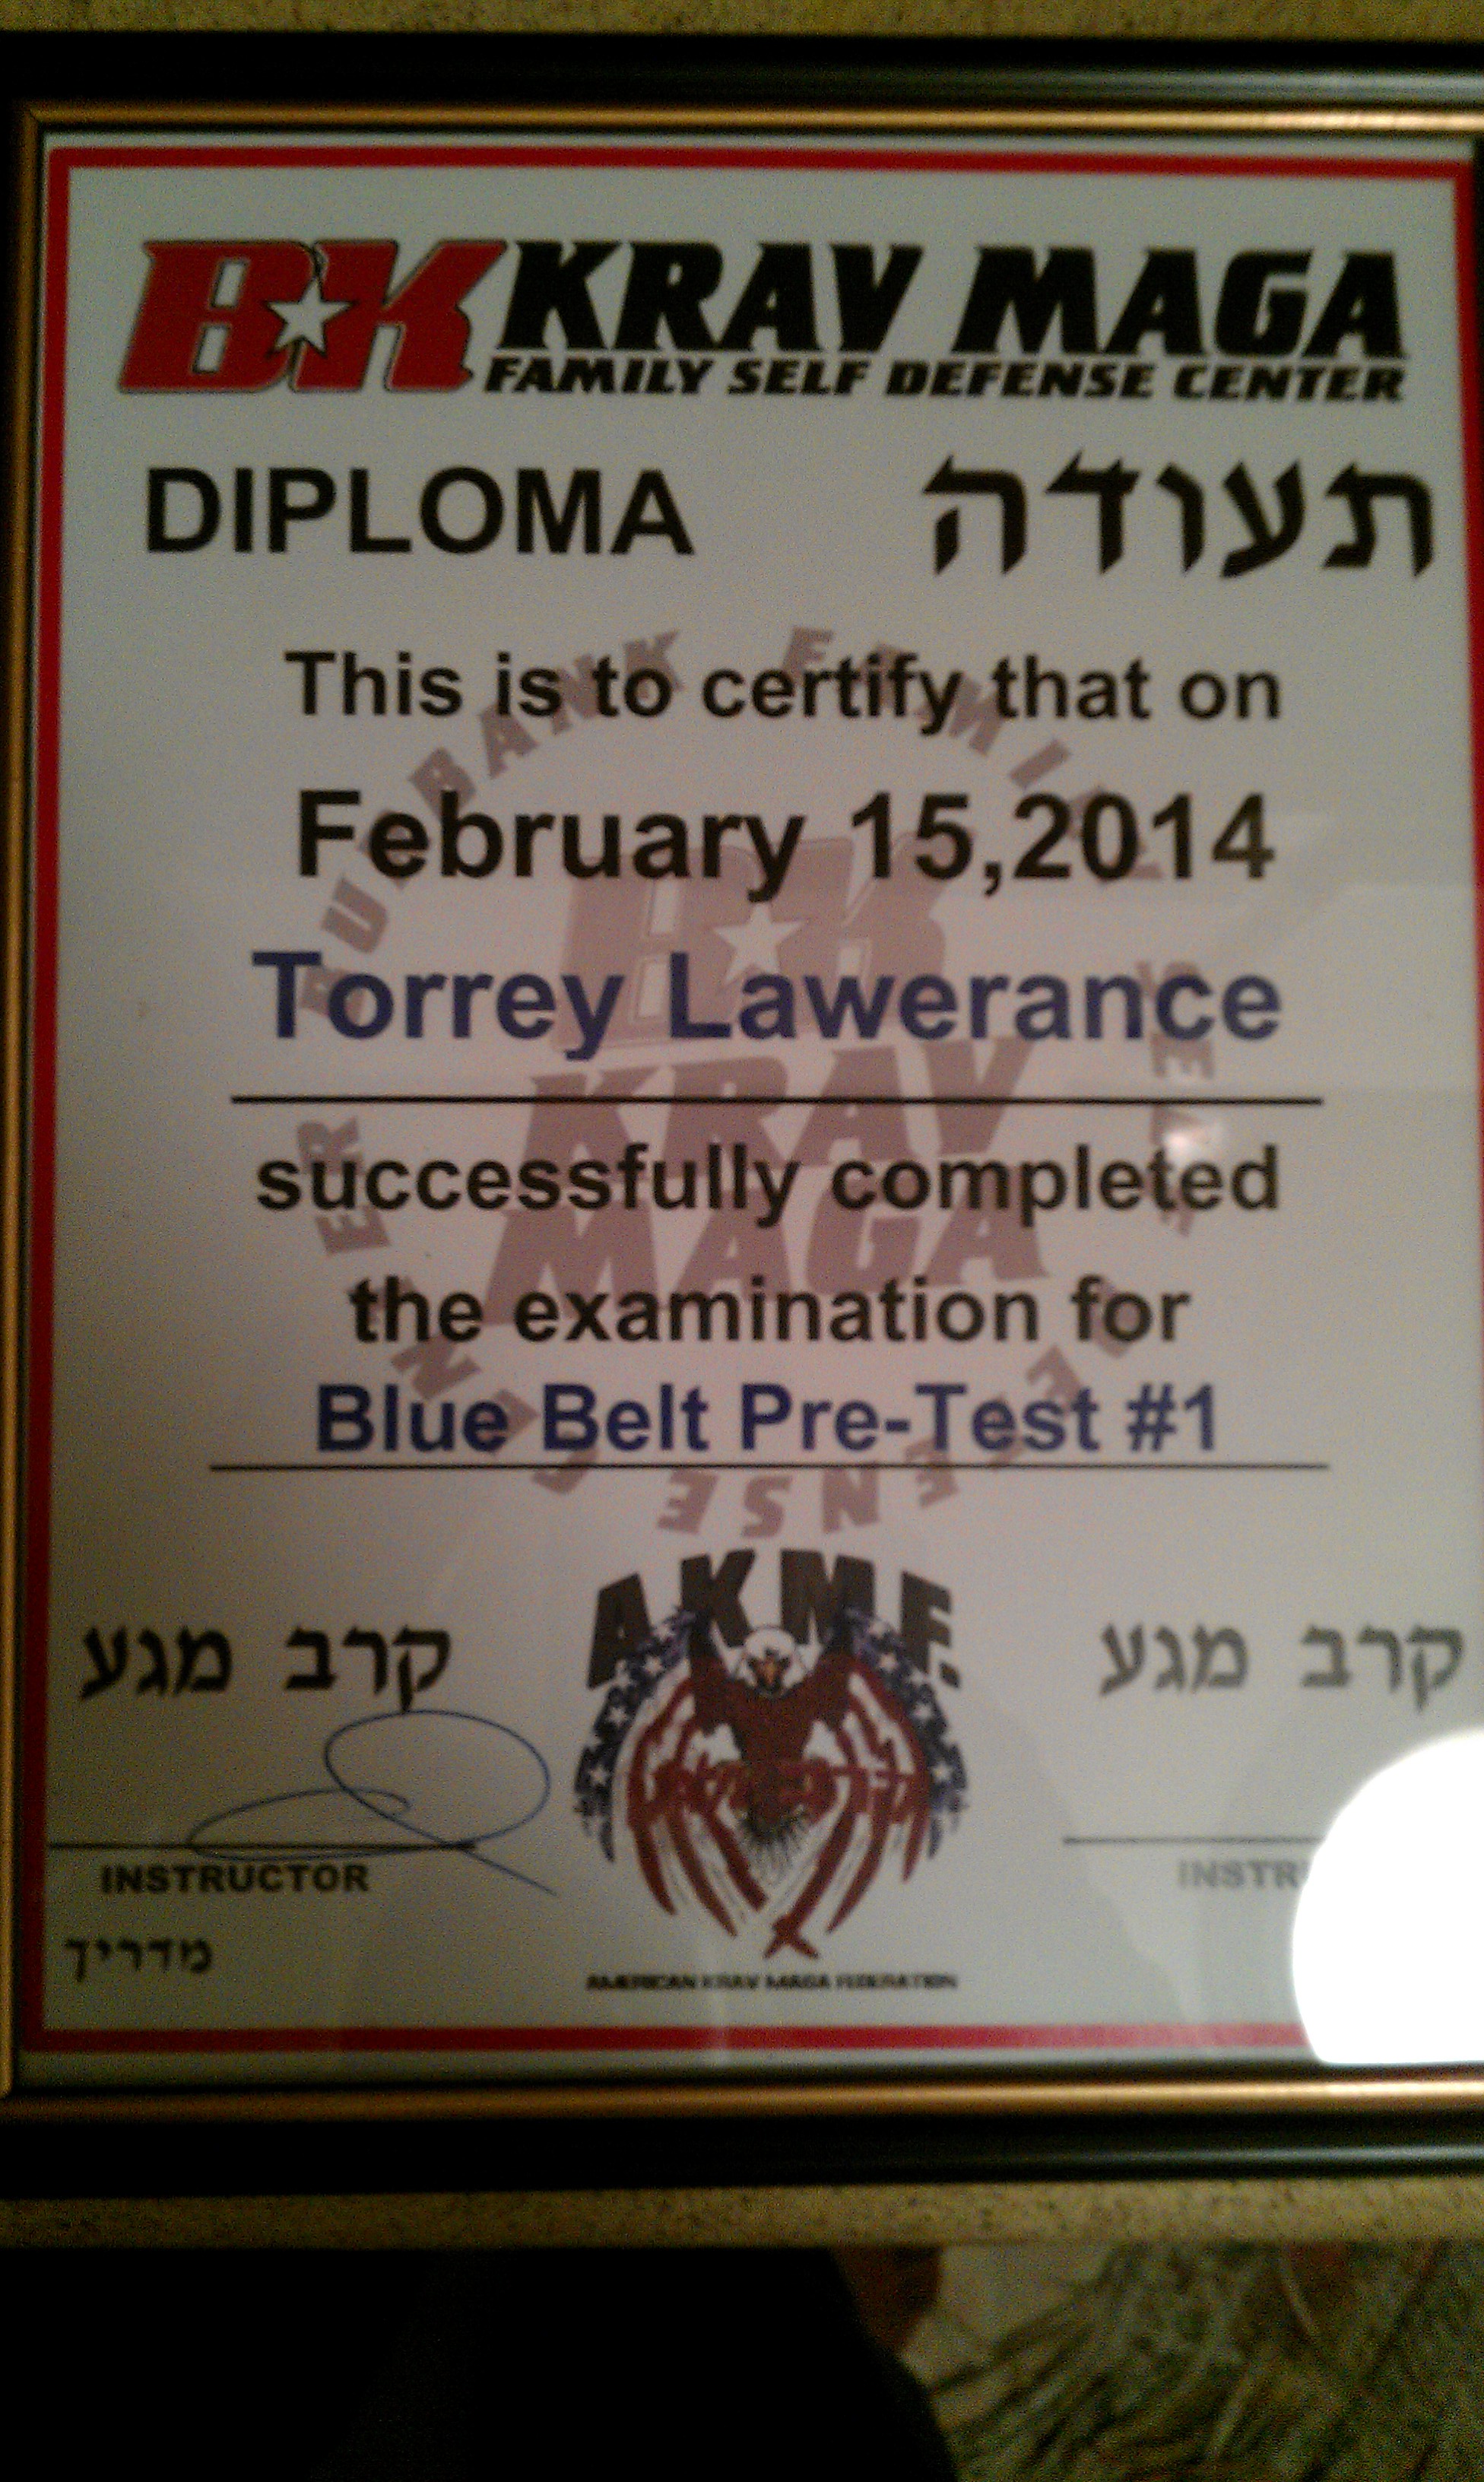 In Feb 2014 I received my certififcate for Blue Belt Pre-Test#1 in Krav Maga